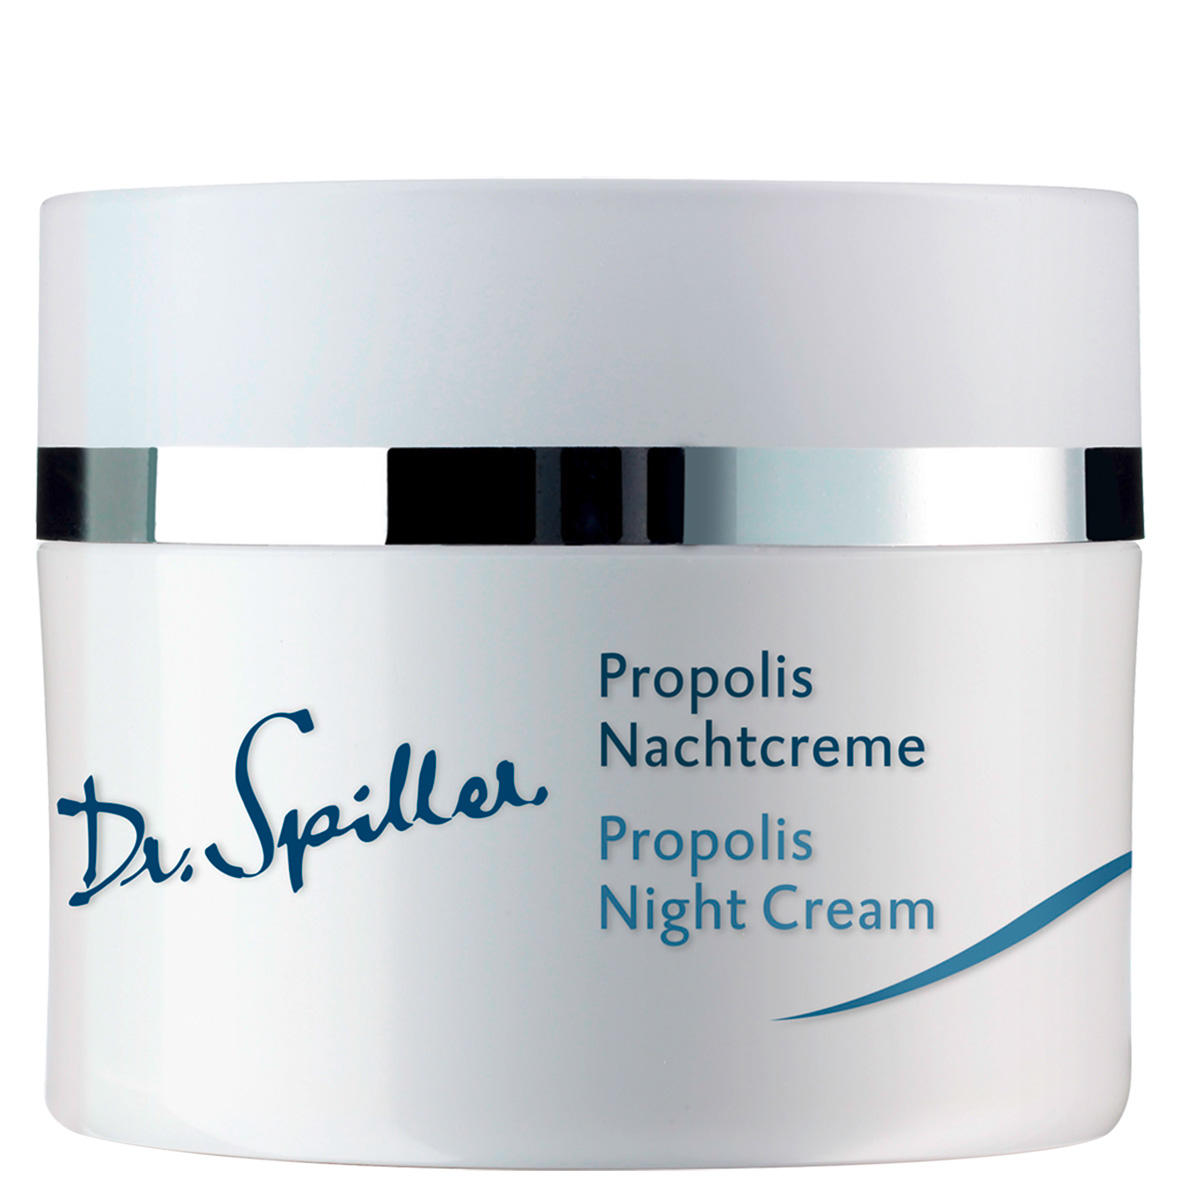 Dr. Spiller Biomimetic SkinCare Propolis Nachtcrème 50 ml - 1